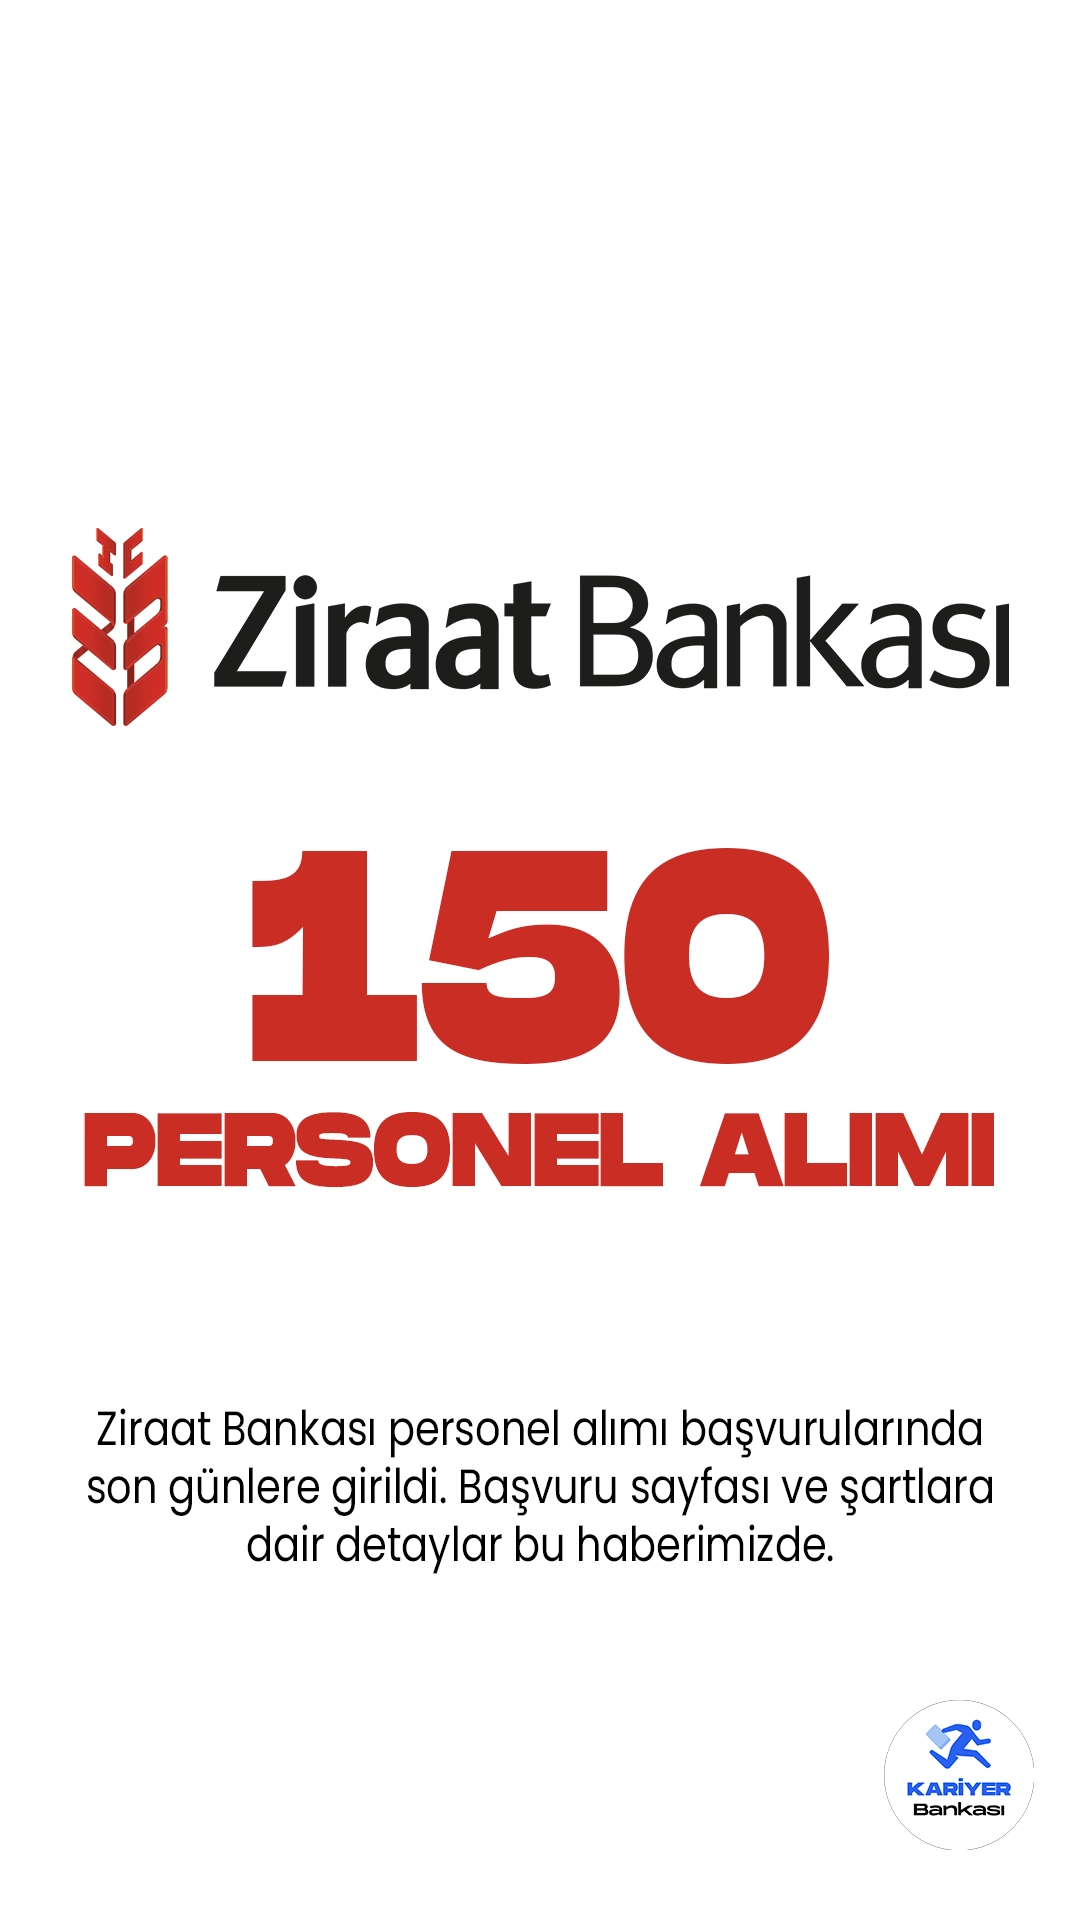 Ziraat Bankası personel alımı başvurularında son günlere girildi. Bankanın resmi sayfasından yayımlanan duyuruda, İstanbul ilindeki Genel Müdürlük Birimleri ile Şubelerinde görevlendirilmek üzere 150 uzman yardımcısı alımı yapılacağı aktarıldı. Başvurular 23 Haziran'da sona erecek. Başvuru yapacak adayların belirtilen şartları sağlaması gerekmektedir.